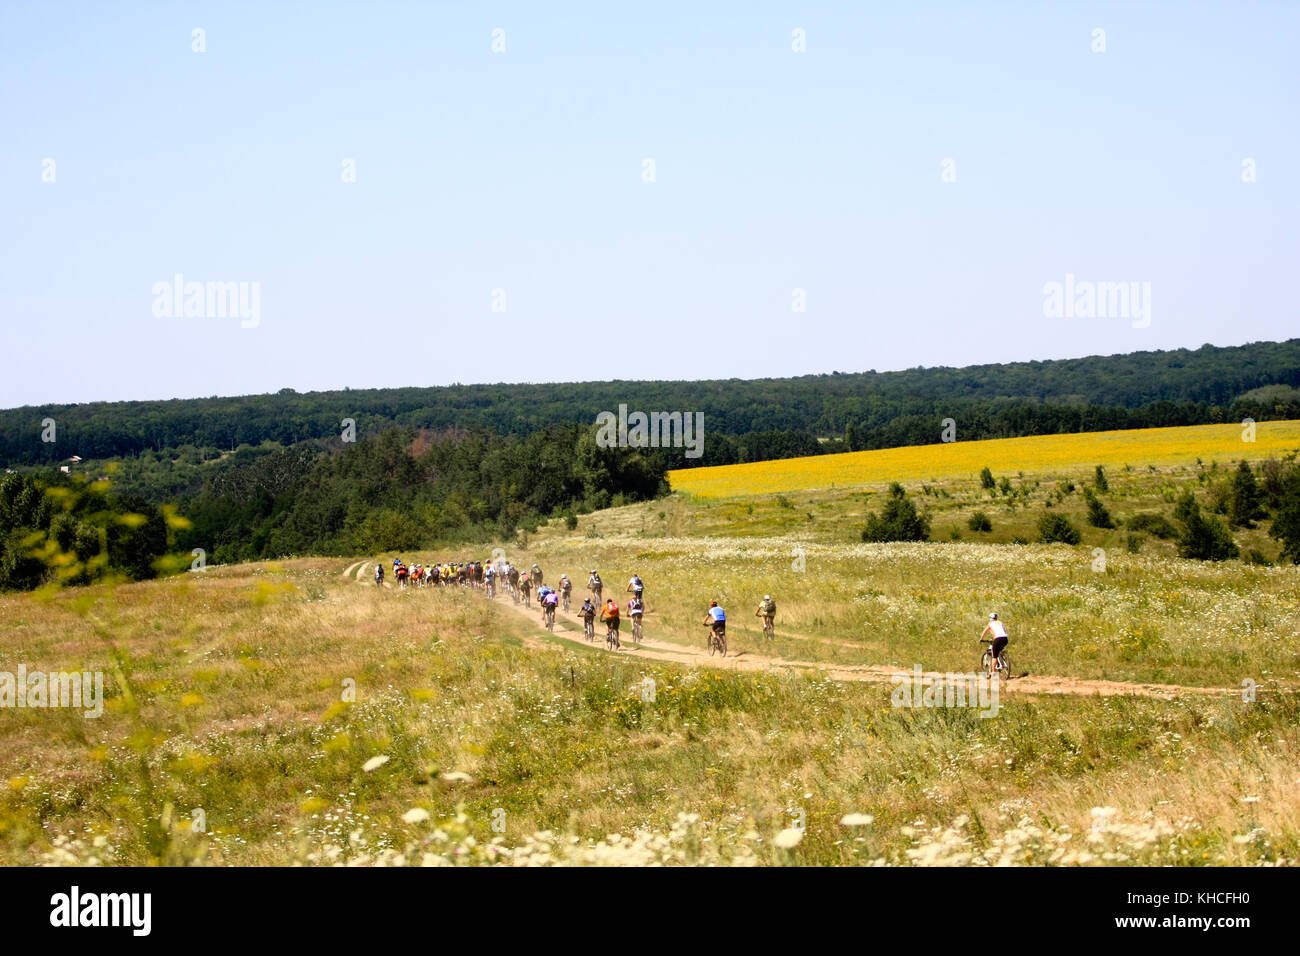 Groupe d'équitation cycliste à travers un champ de blé pendant une chaude journée d'été, ciel bleu Banque D'Images